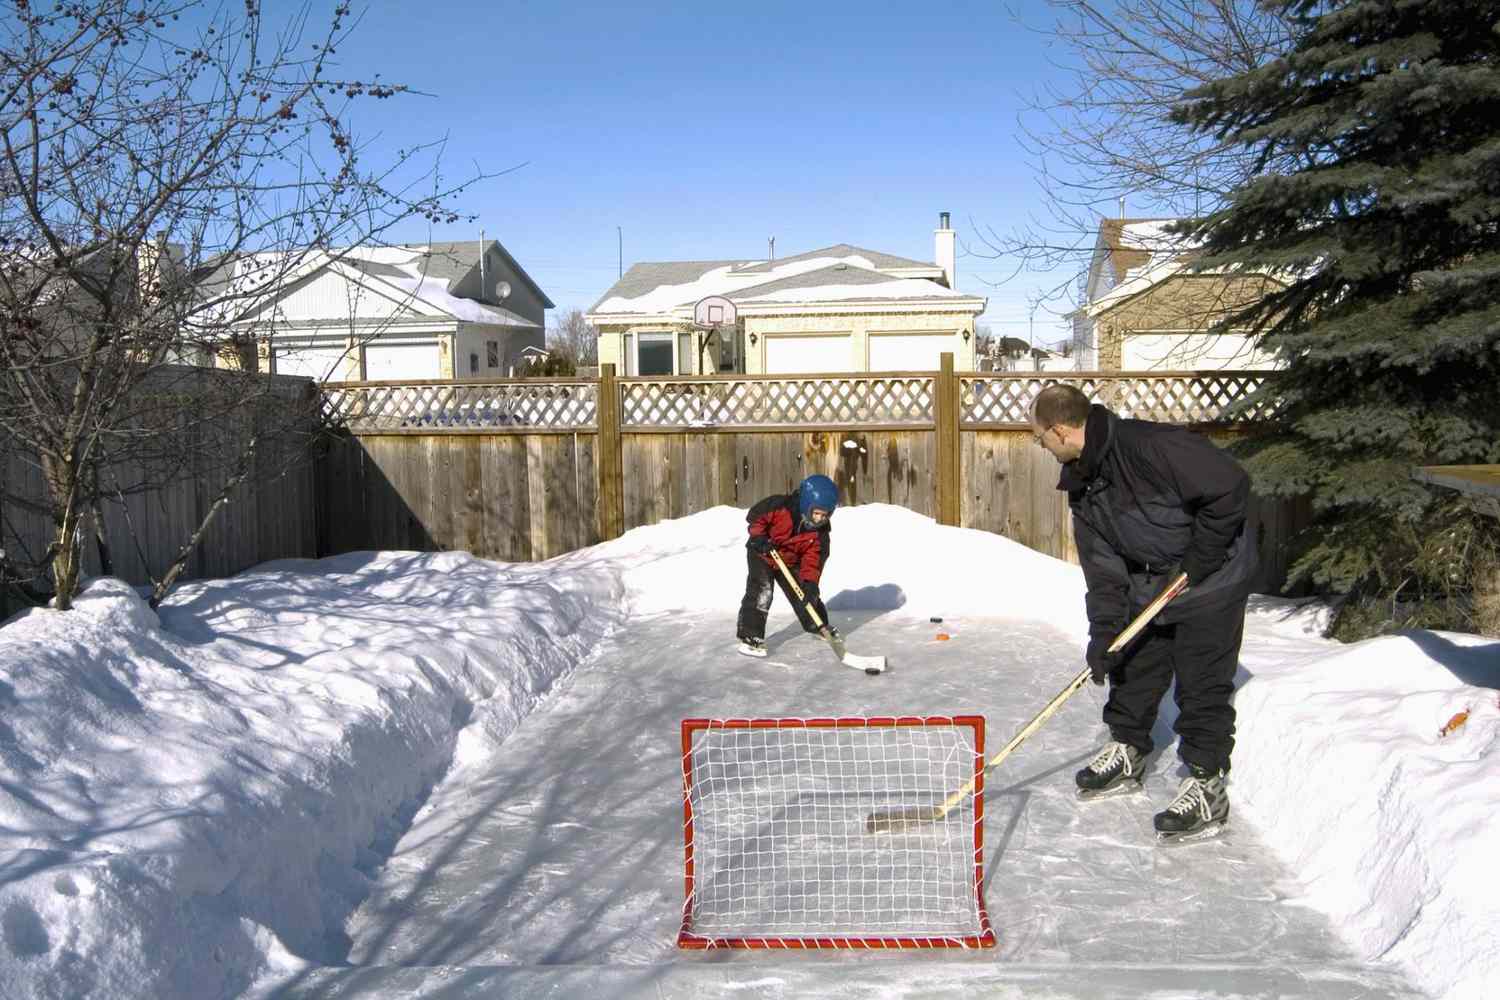 Vater und Sohn beim Hockeyspielen im Hinterhof, Winnipeg, Manitoba